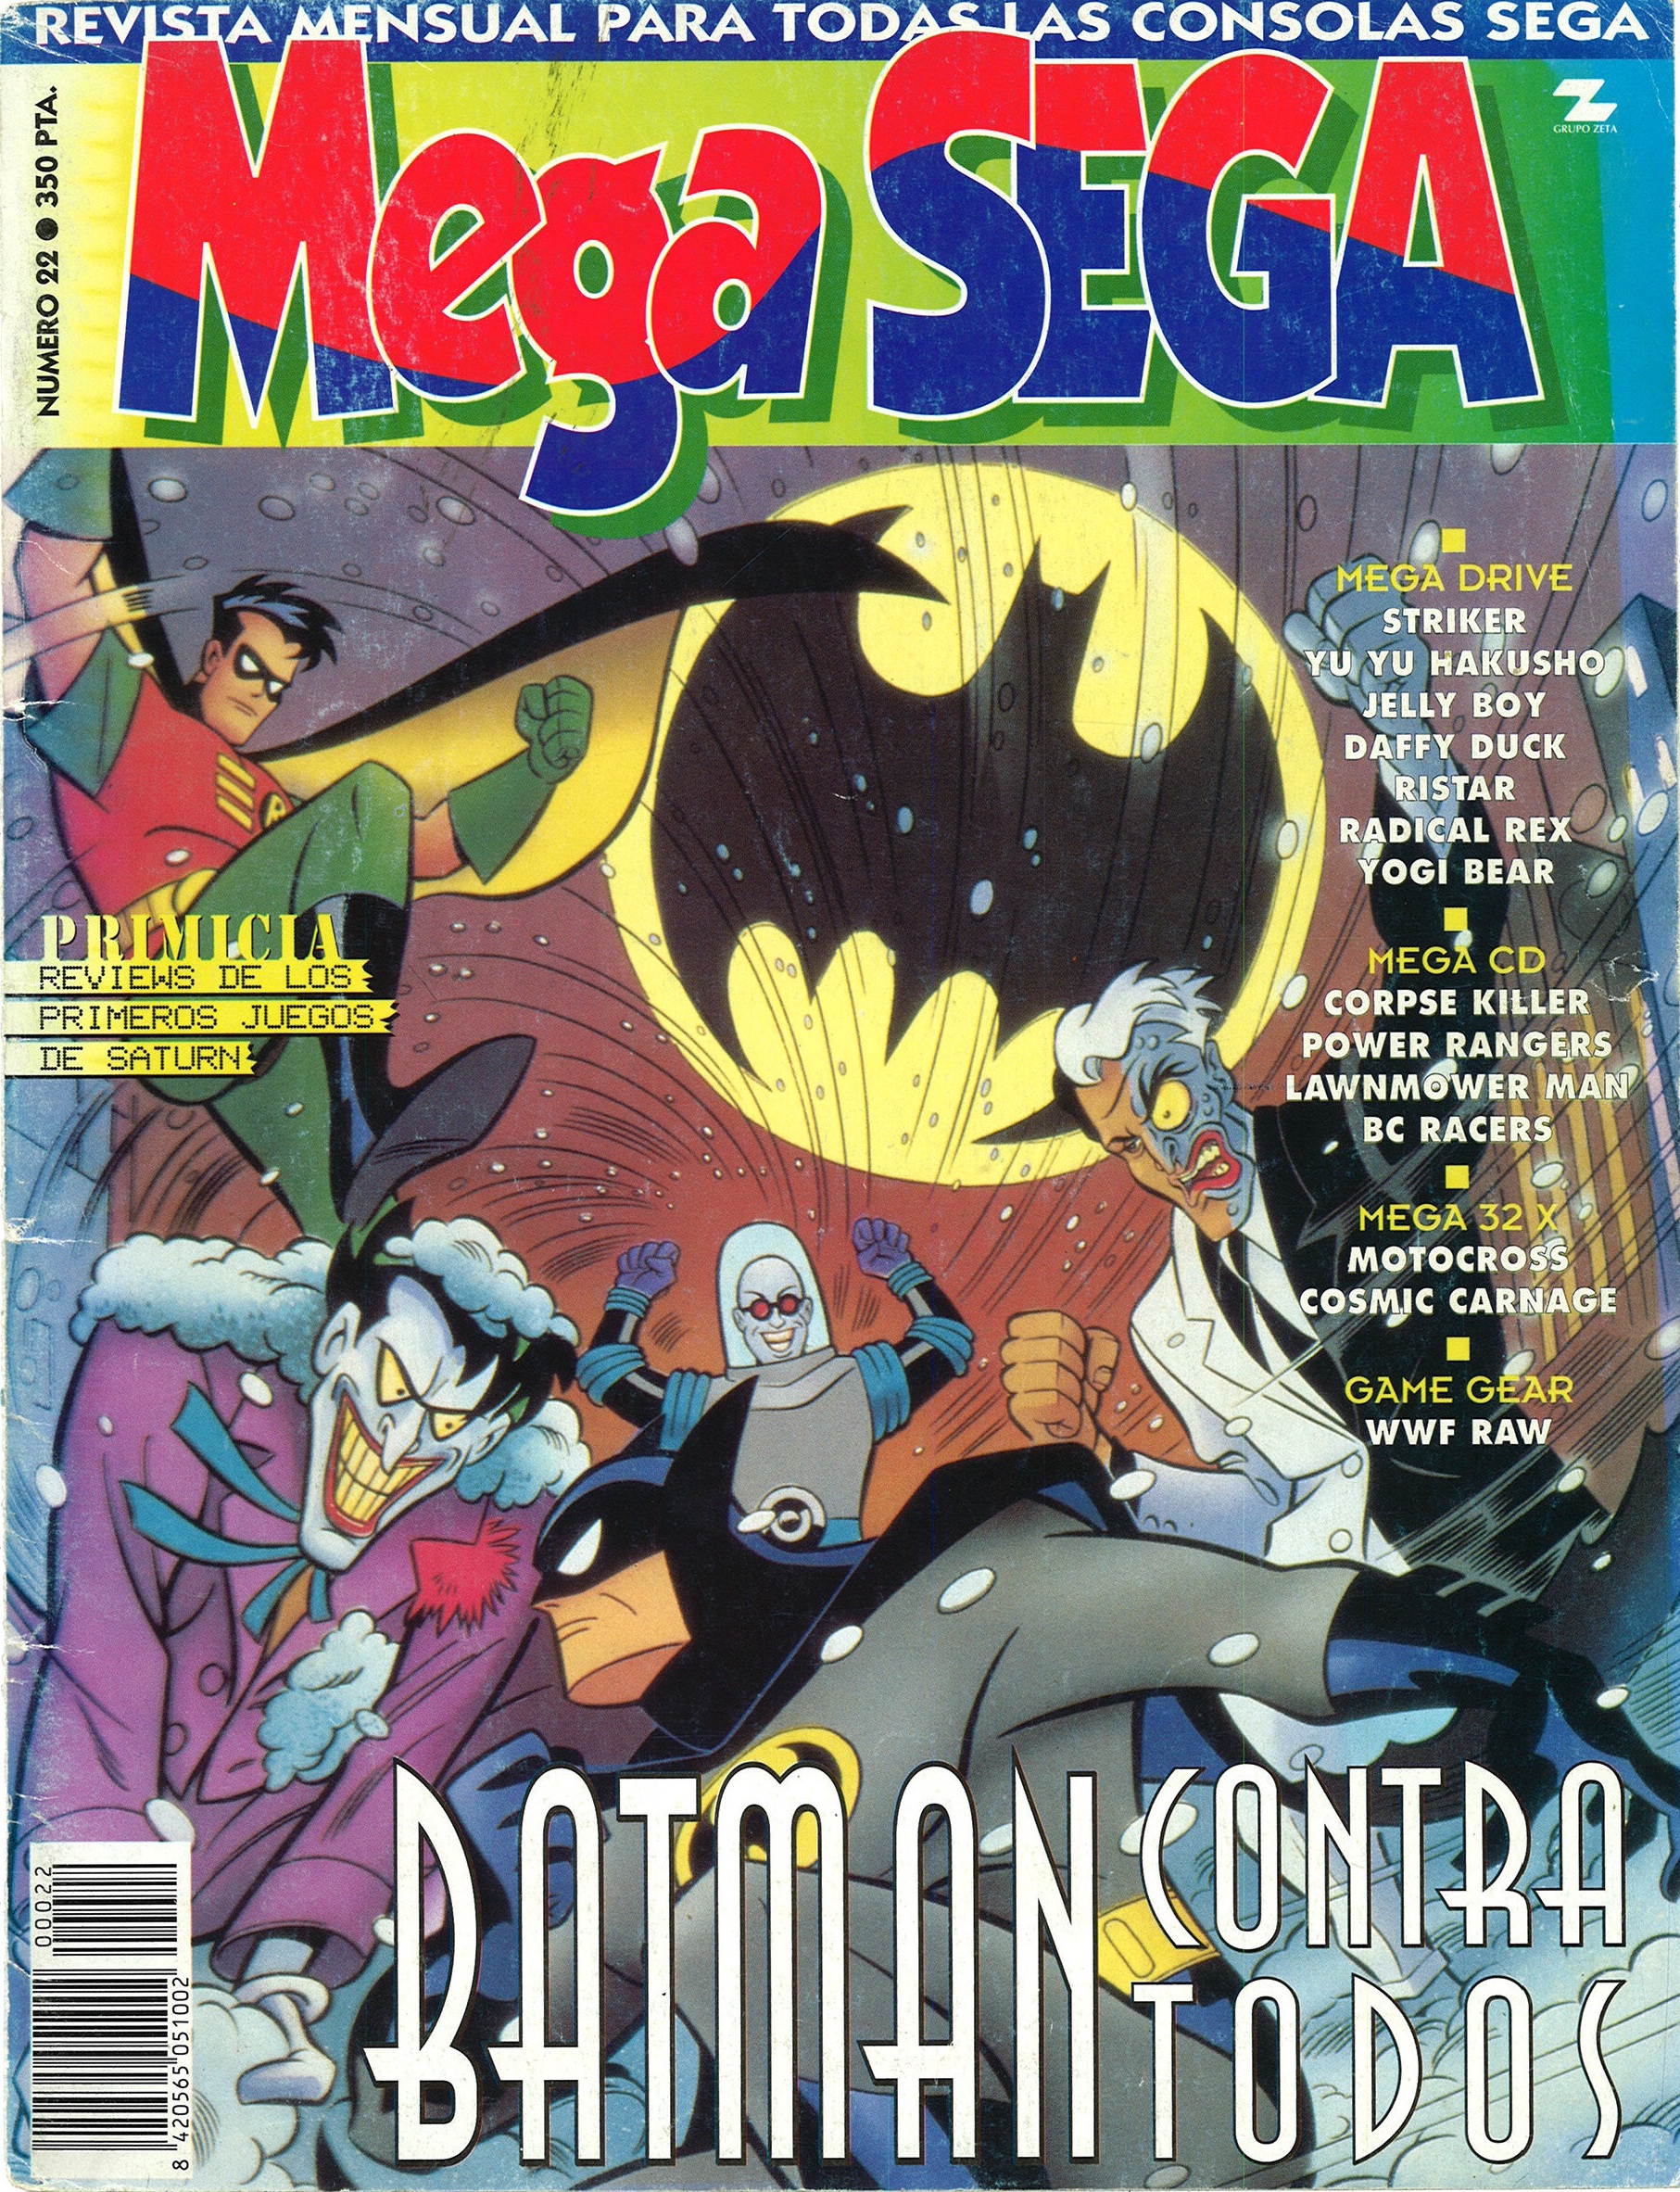 MegaSega 22 cover.jpg